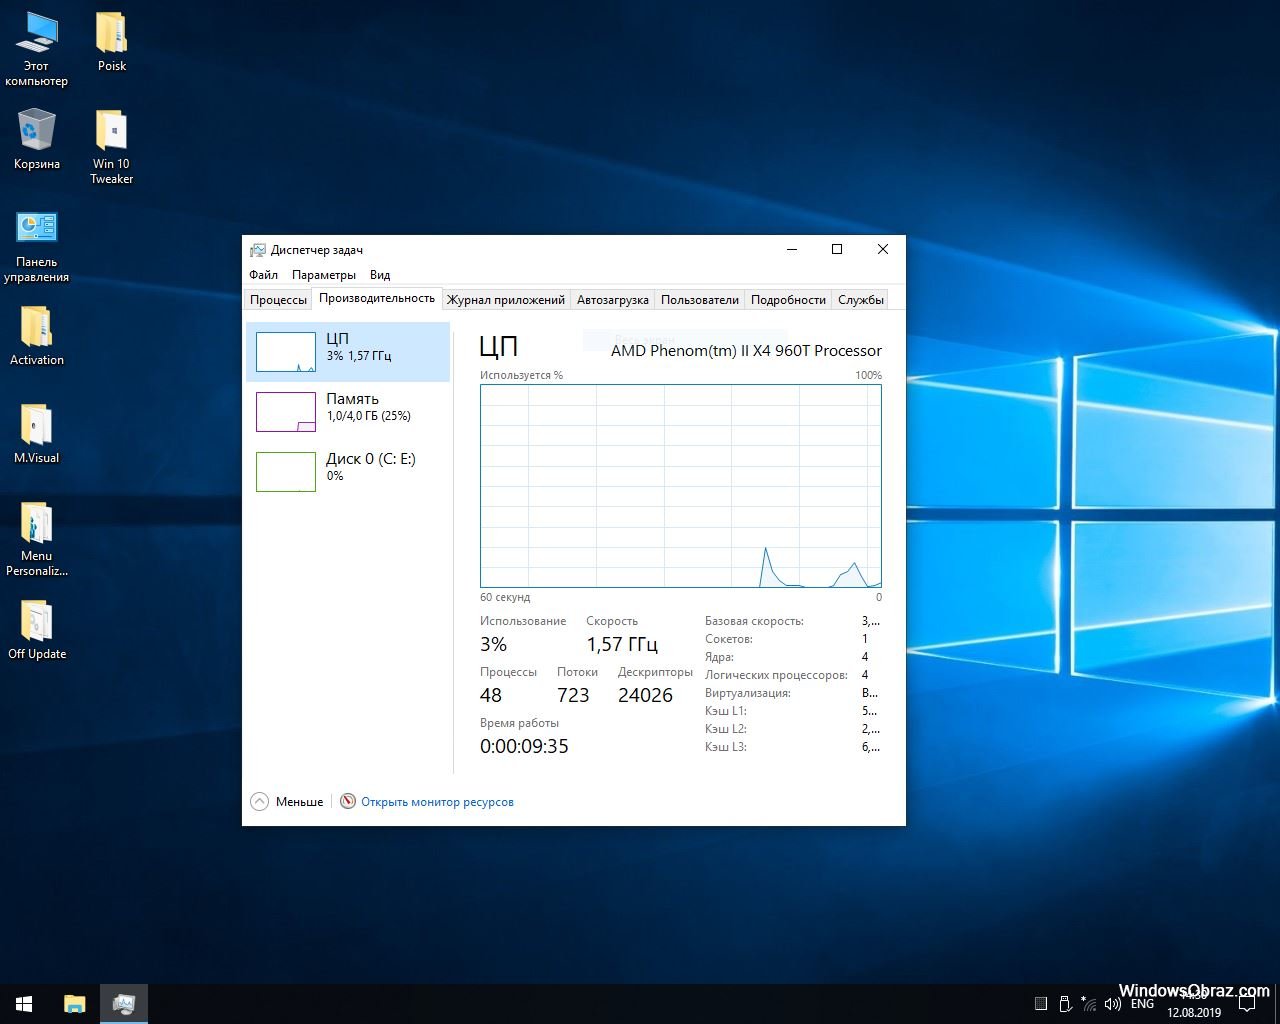 Виндовс 10 tools. Самая легкая Windows. Облегченный виндовс 10. Самая облегченная Windows. Windows 10 облегченная версия.